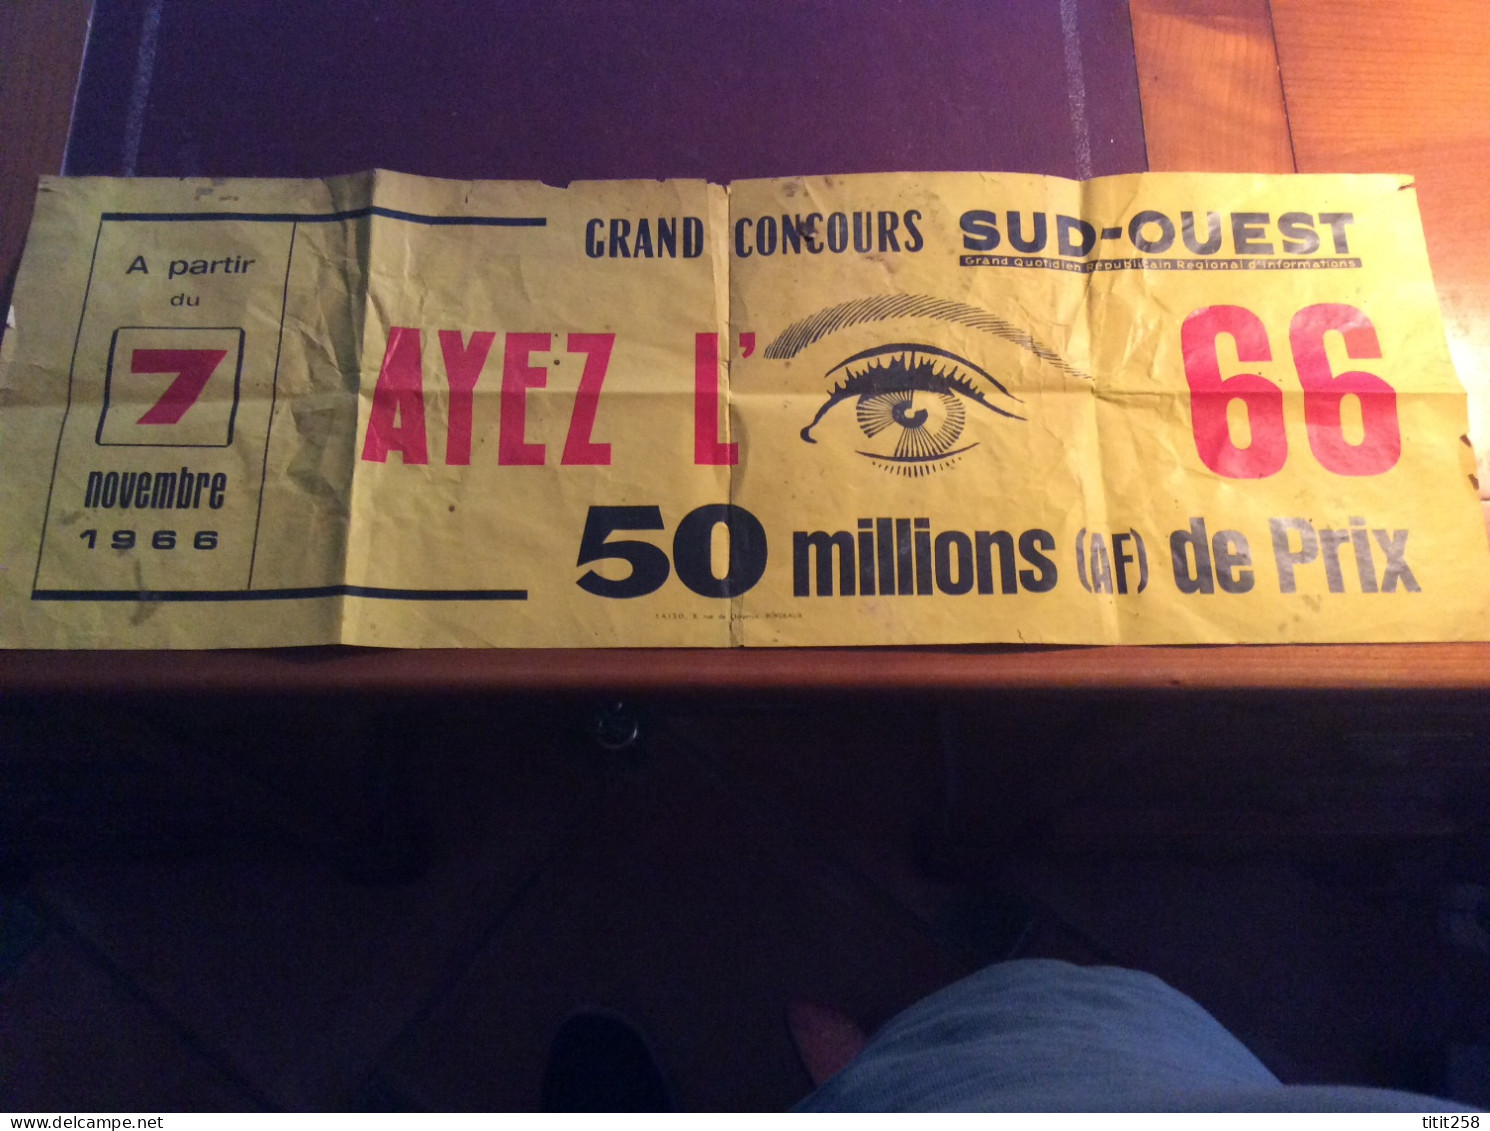 Ancien Bandeau Grand Concours SUD OUEST Ayez L'Oeil 1966  . Bordeaux 33 Gironde - Posters